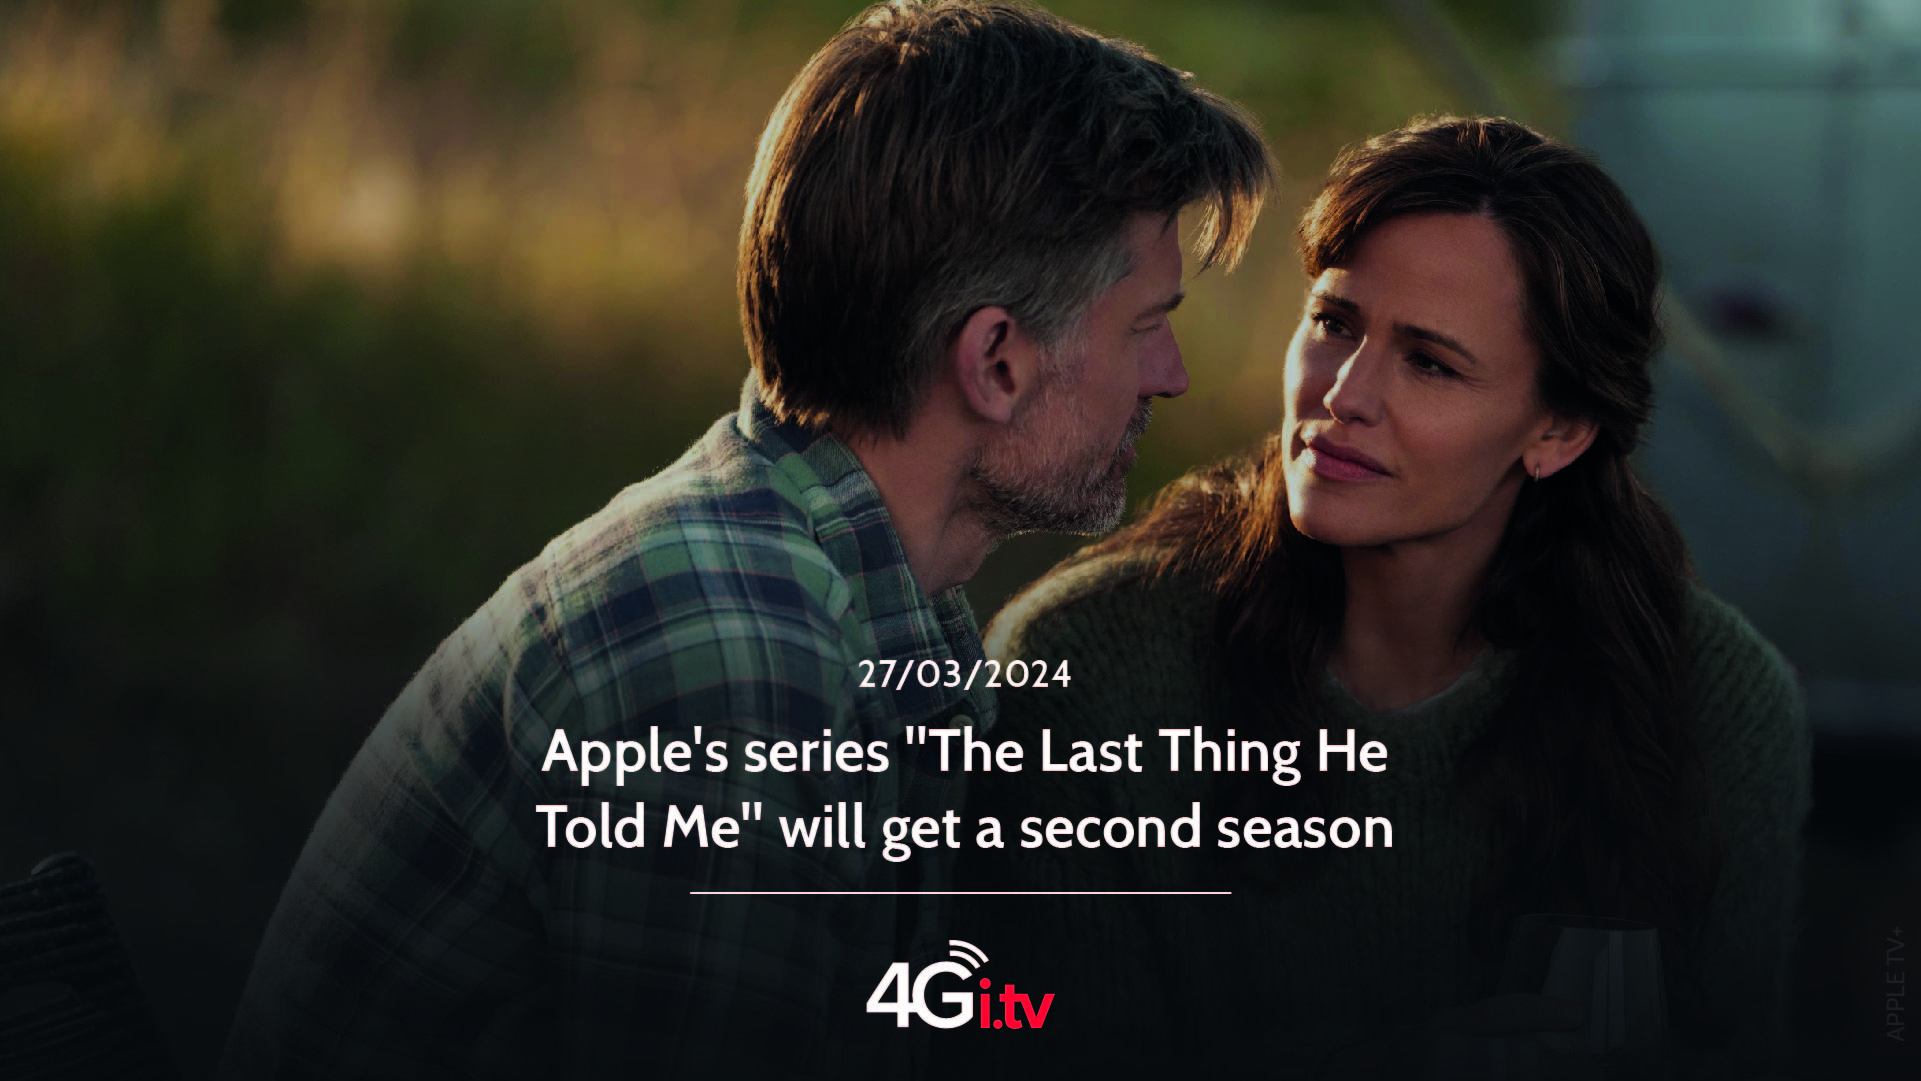 Lesen Sie mehr über den Artikel Apple’s series “The Last Thing He Told Me” will get a second season 